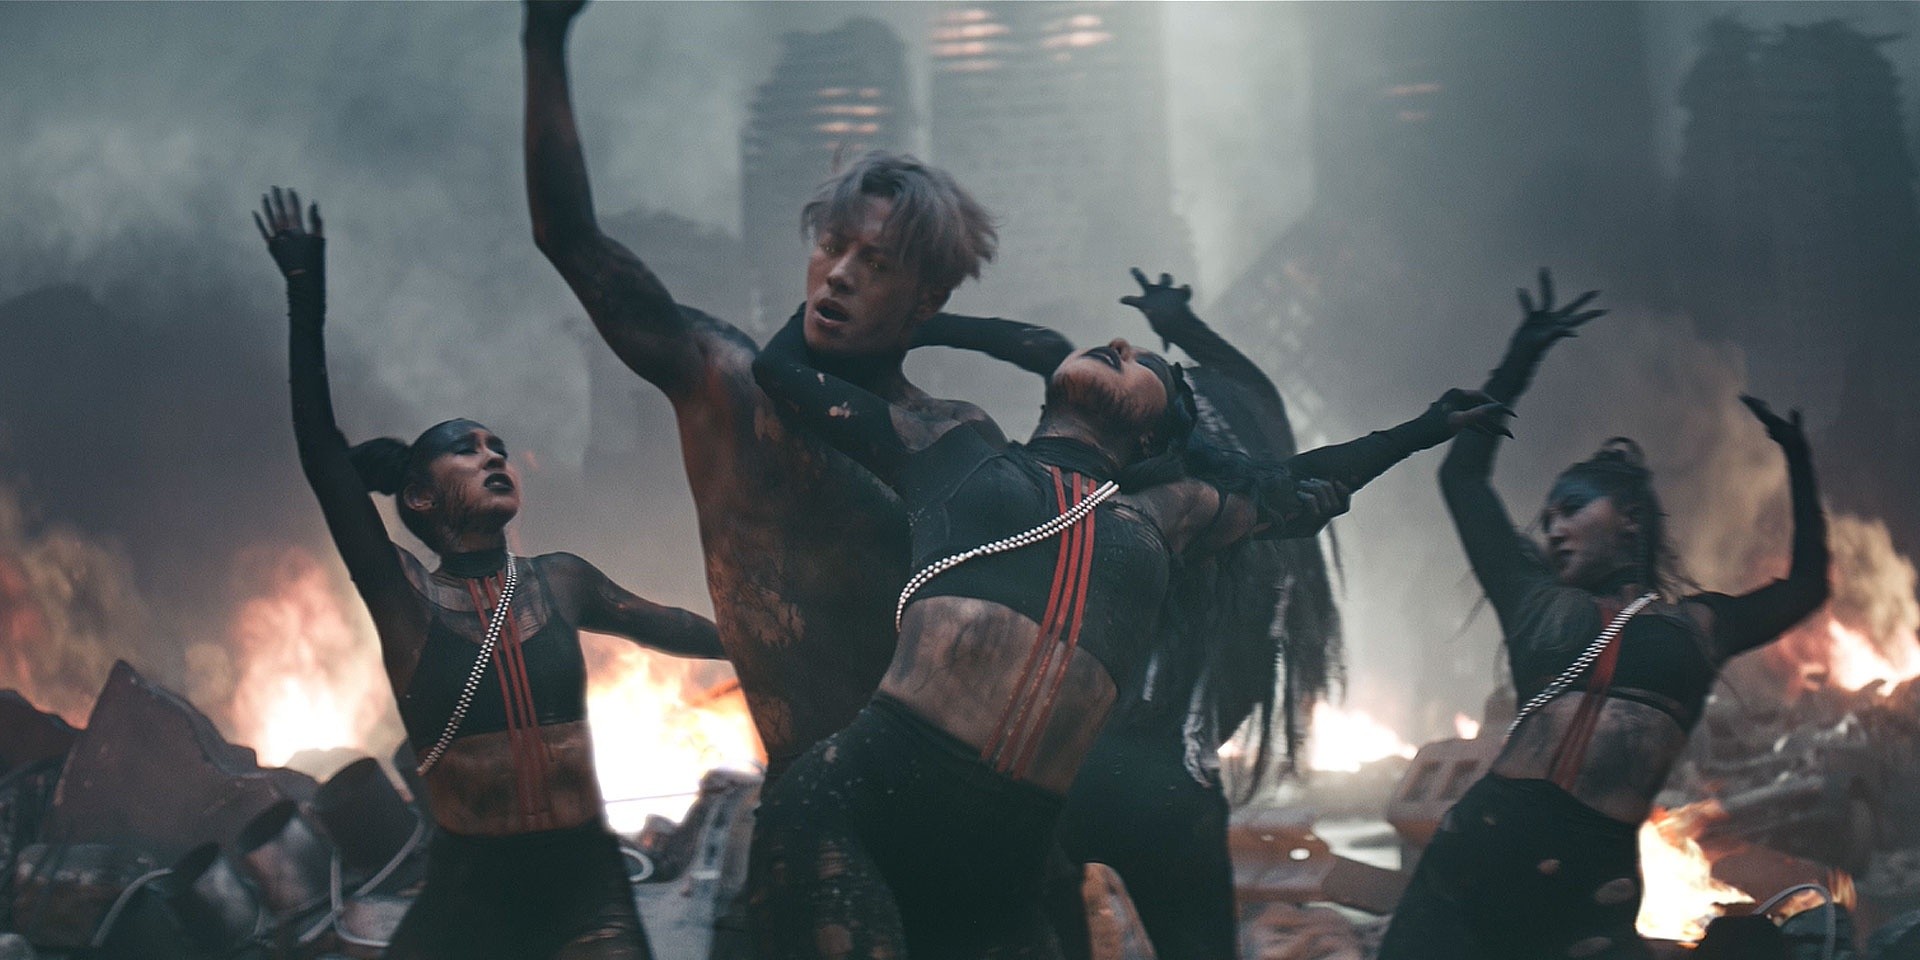 Jackson Wang - Cruel (Official Music Video) 